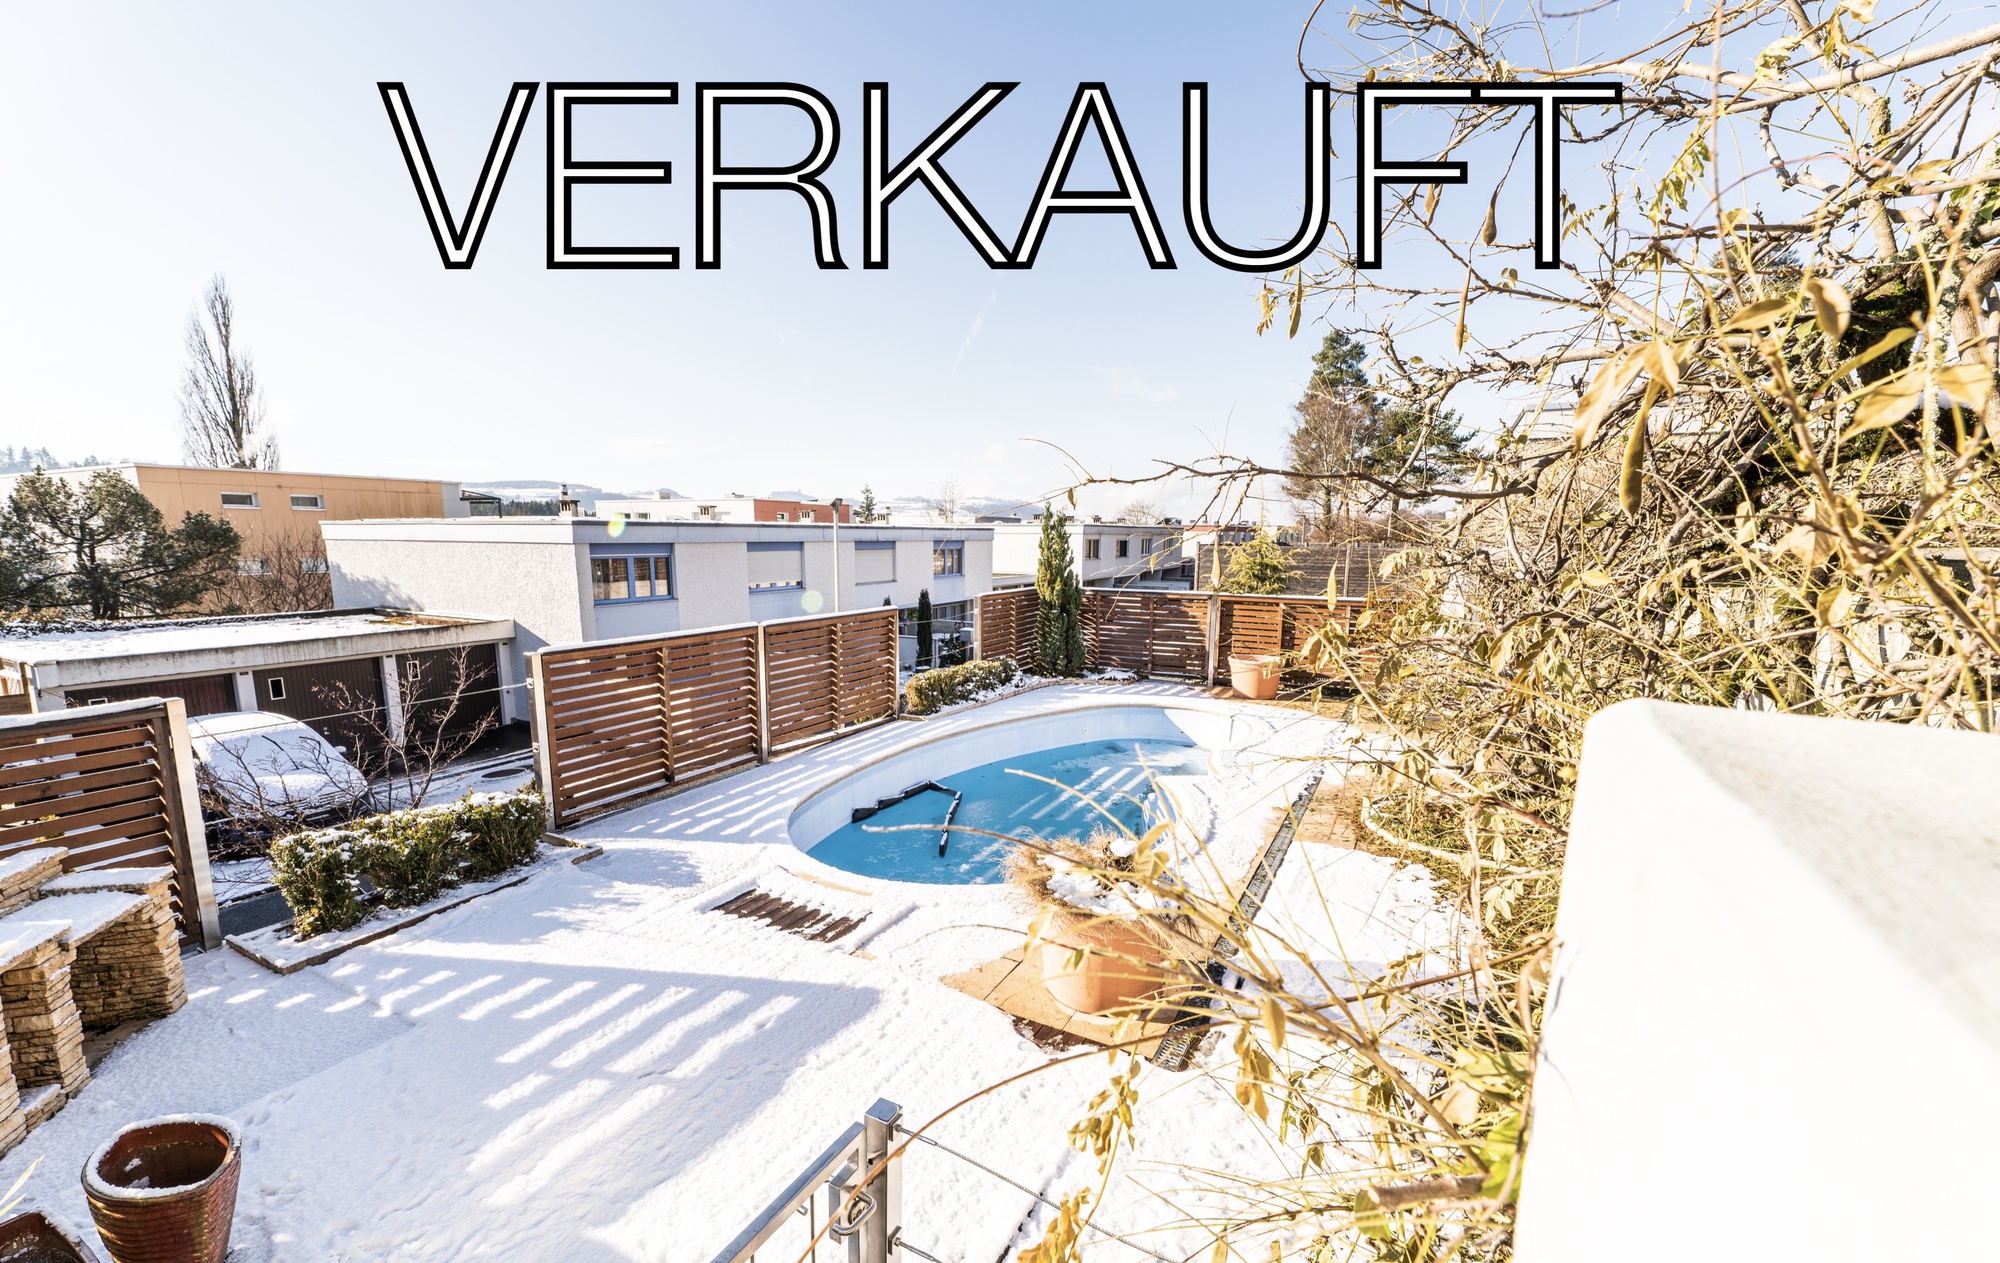 VERKAUFT - Einfamilienhaus mit Umschwung inkl. Pool in Rüfenacht